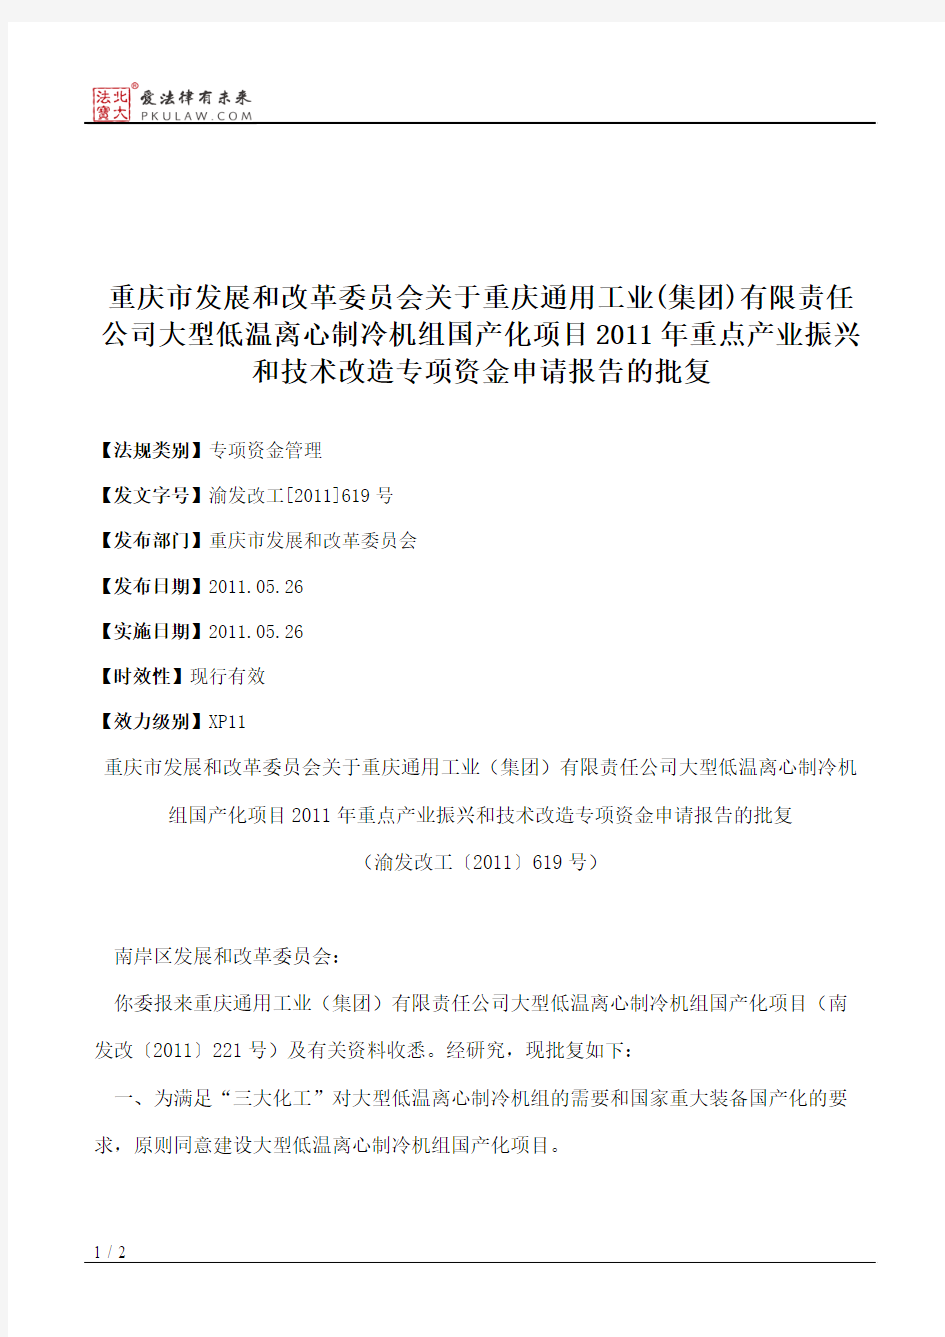 重庆市发展和改革委员会关于重庆通用工业(集团)有限责任公司大型